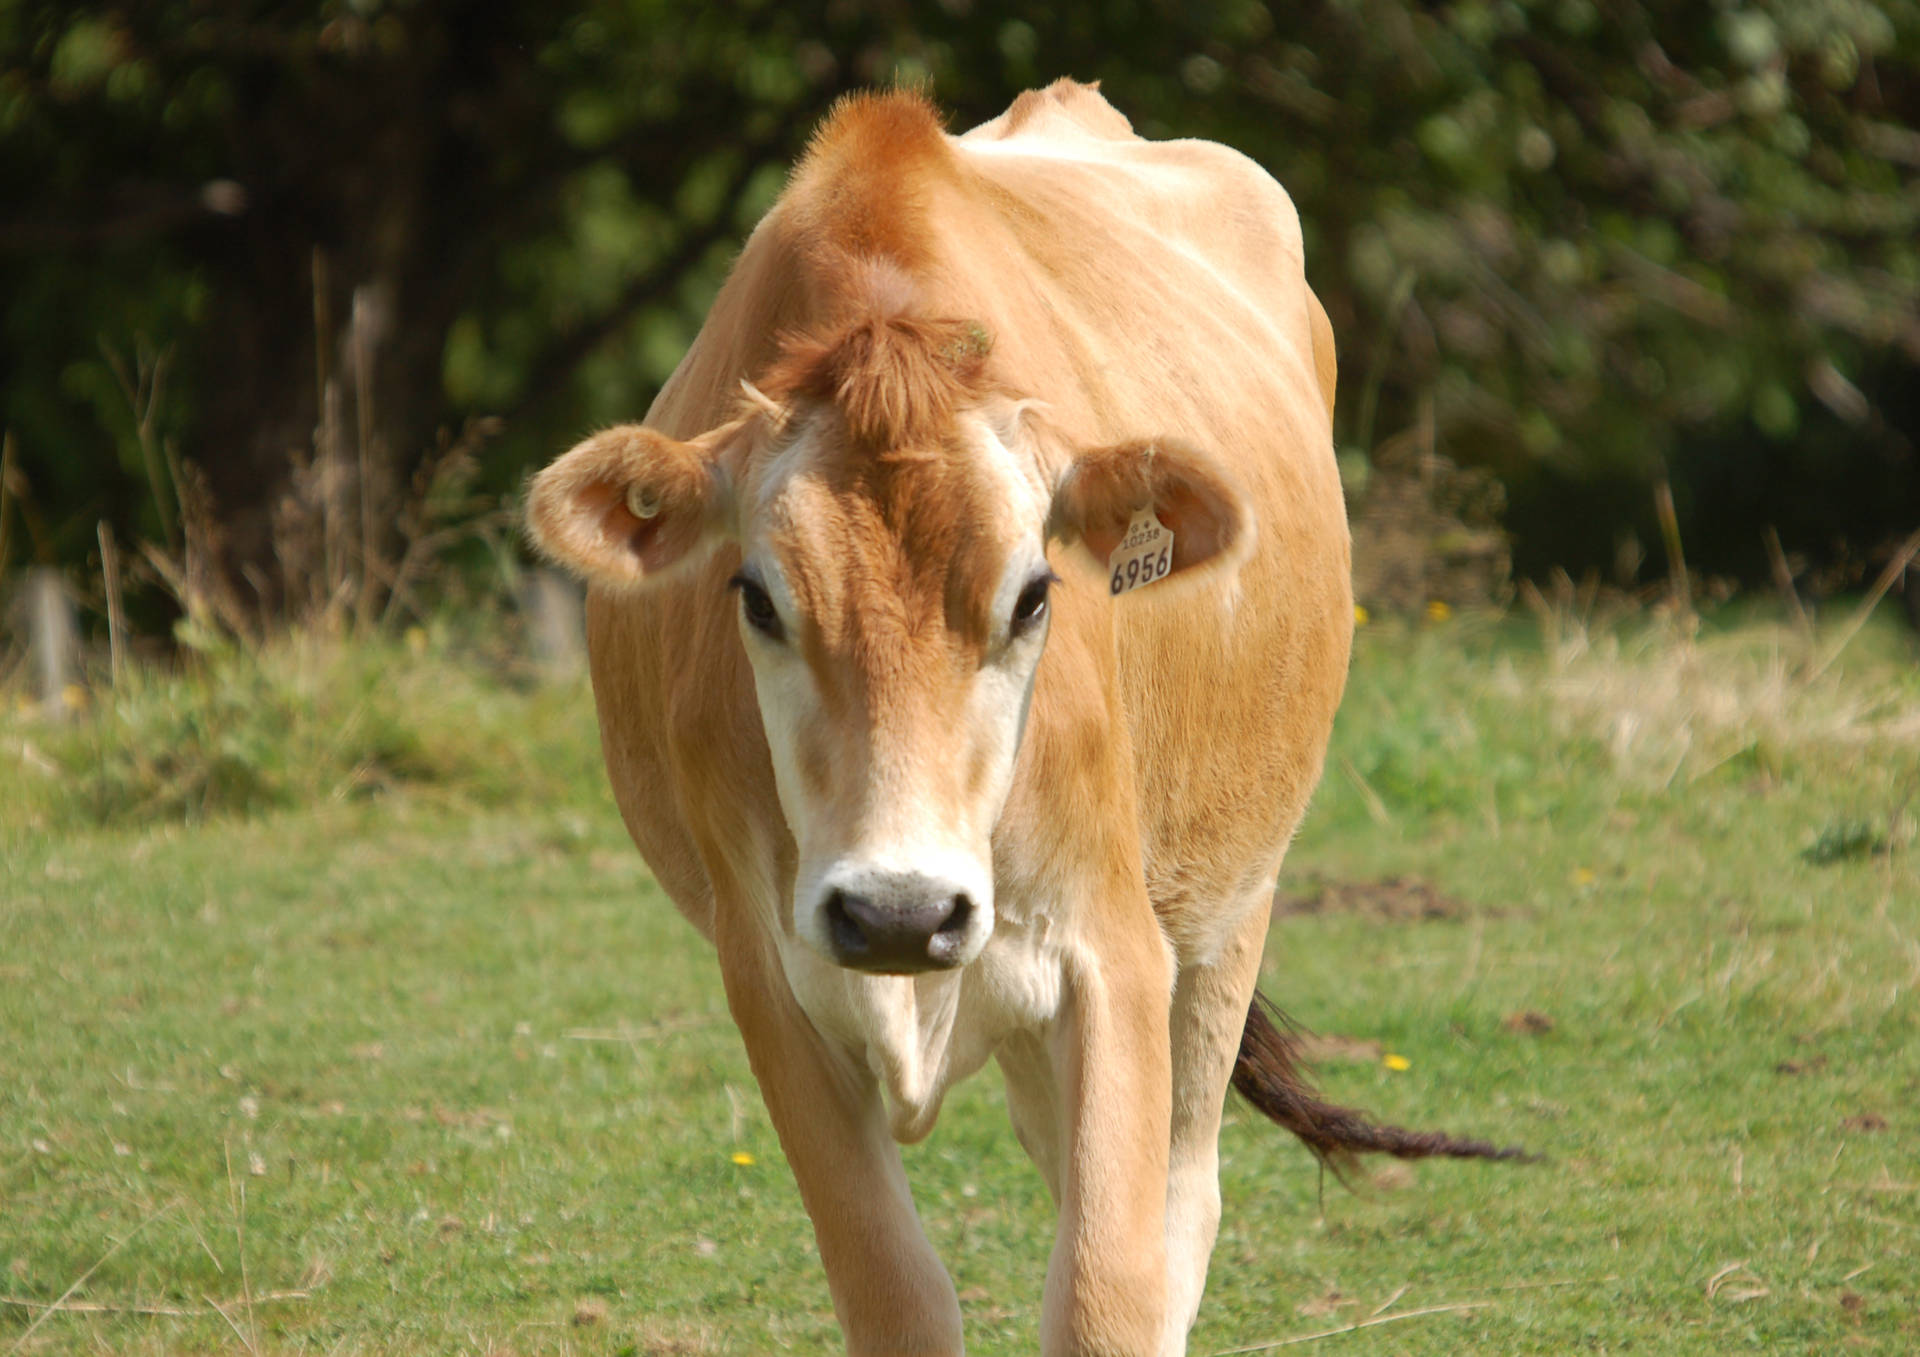 Cute Light Brown Cow On Grass Wallpaper